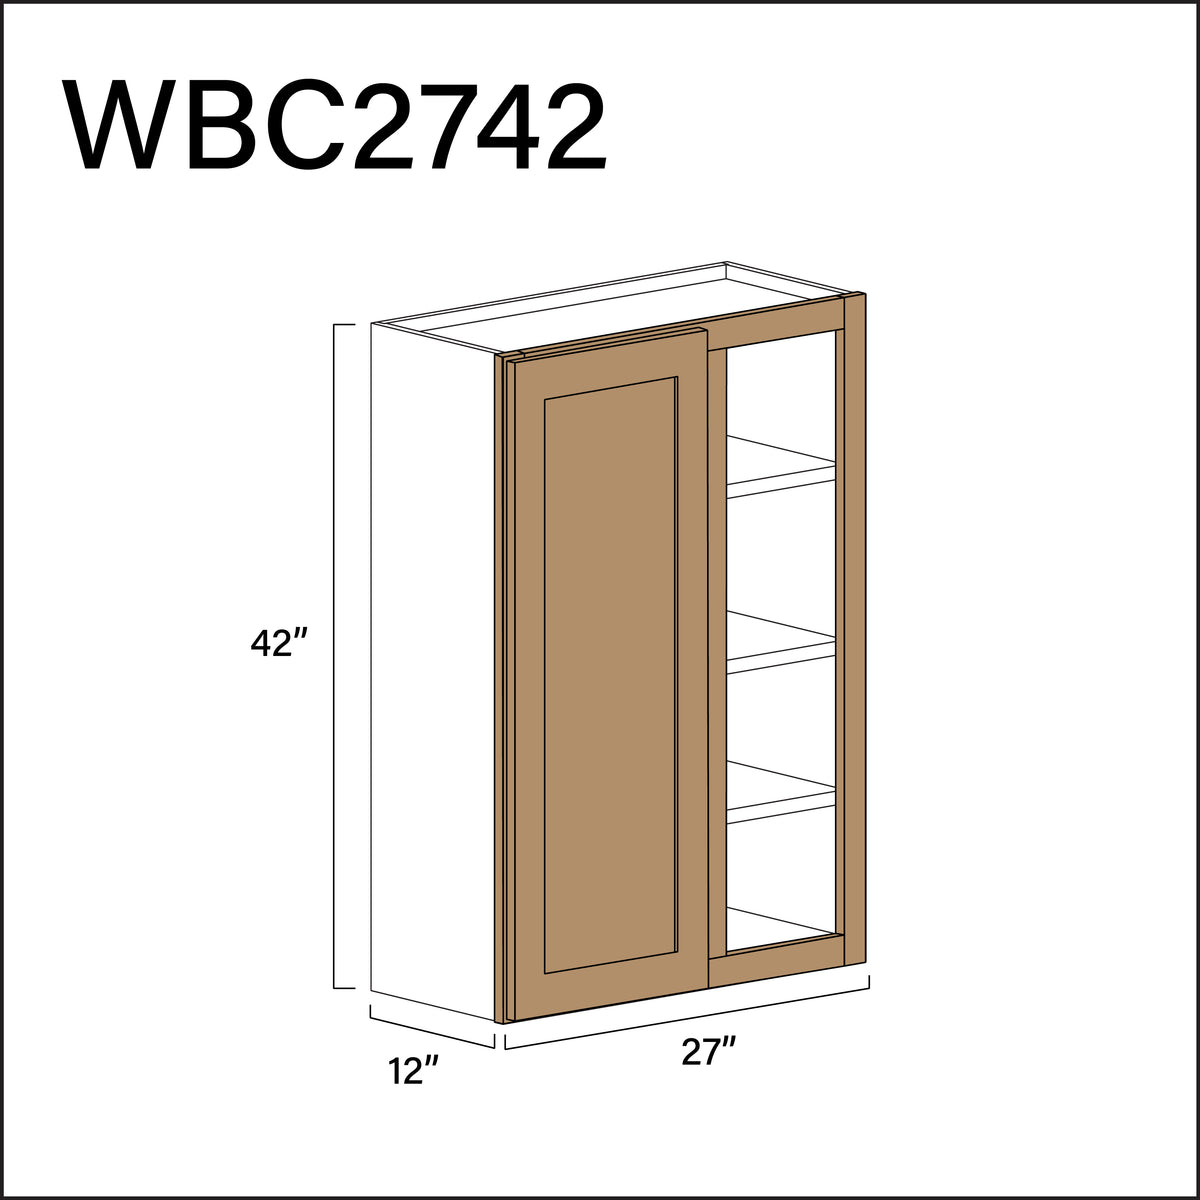 Alton Iced Mocha Wall Blind Corner Cabinet - 27" W x 42" H x 12" D